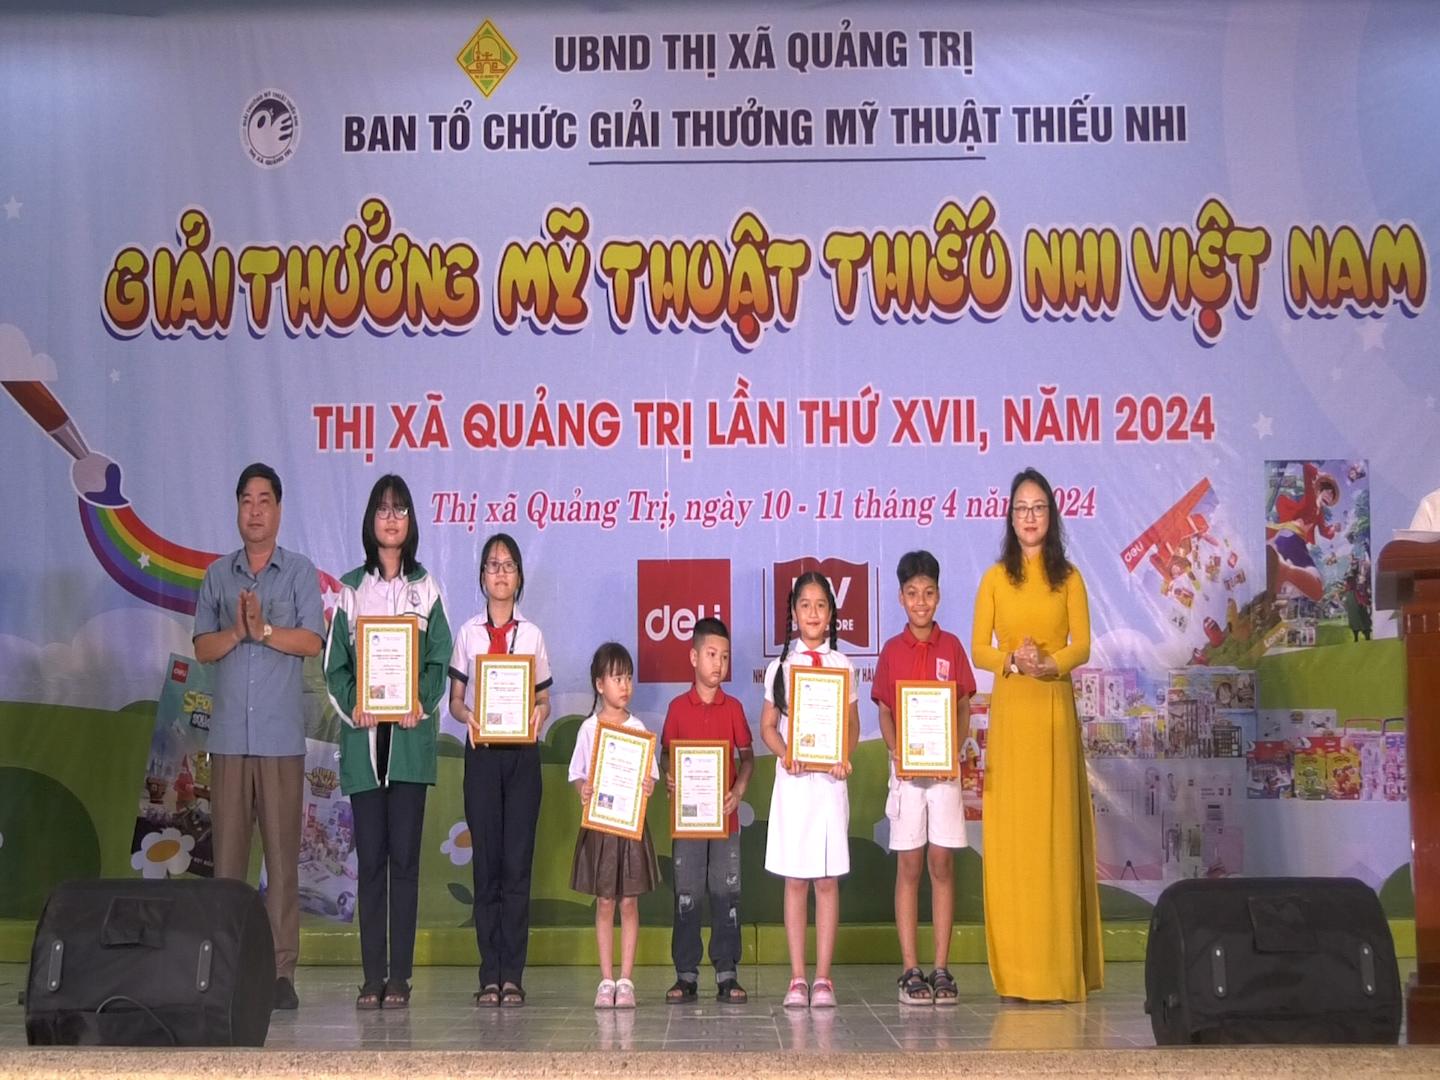 Bế mạc giải thưởng Mỹ thuật thiếu nhi thị xã Quảng Trị lần thứ XVII năm 2024